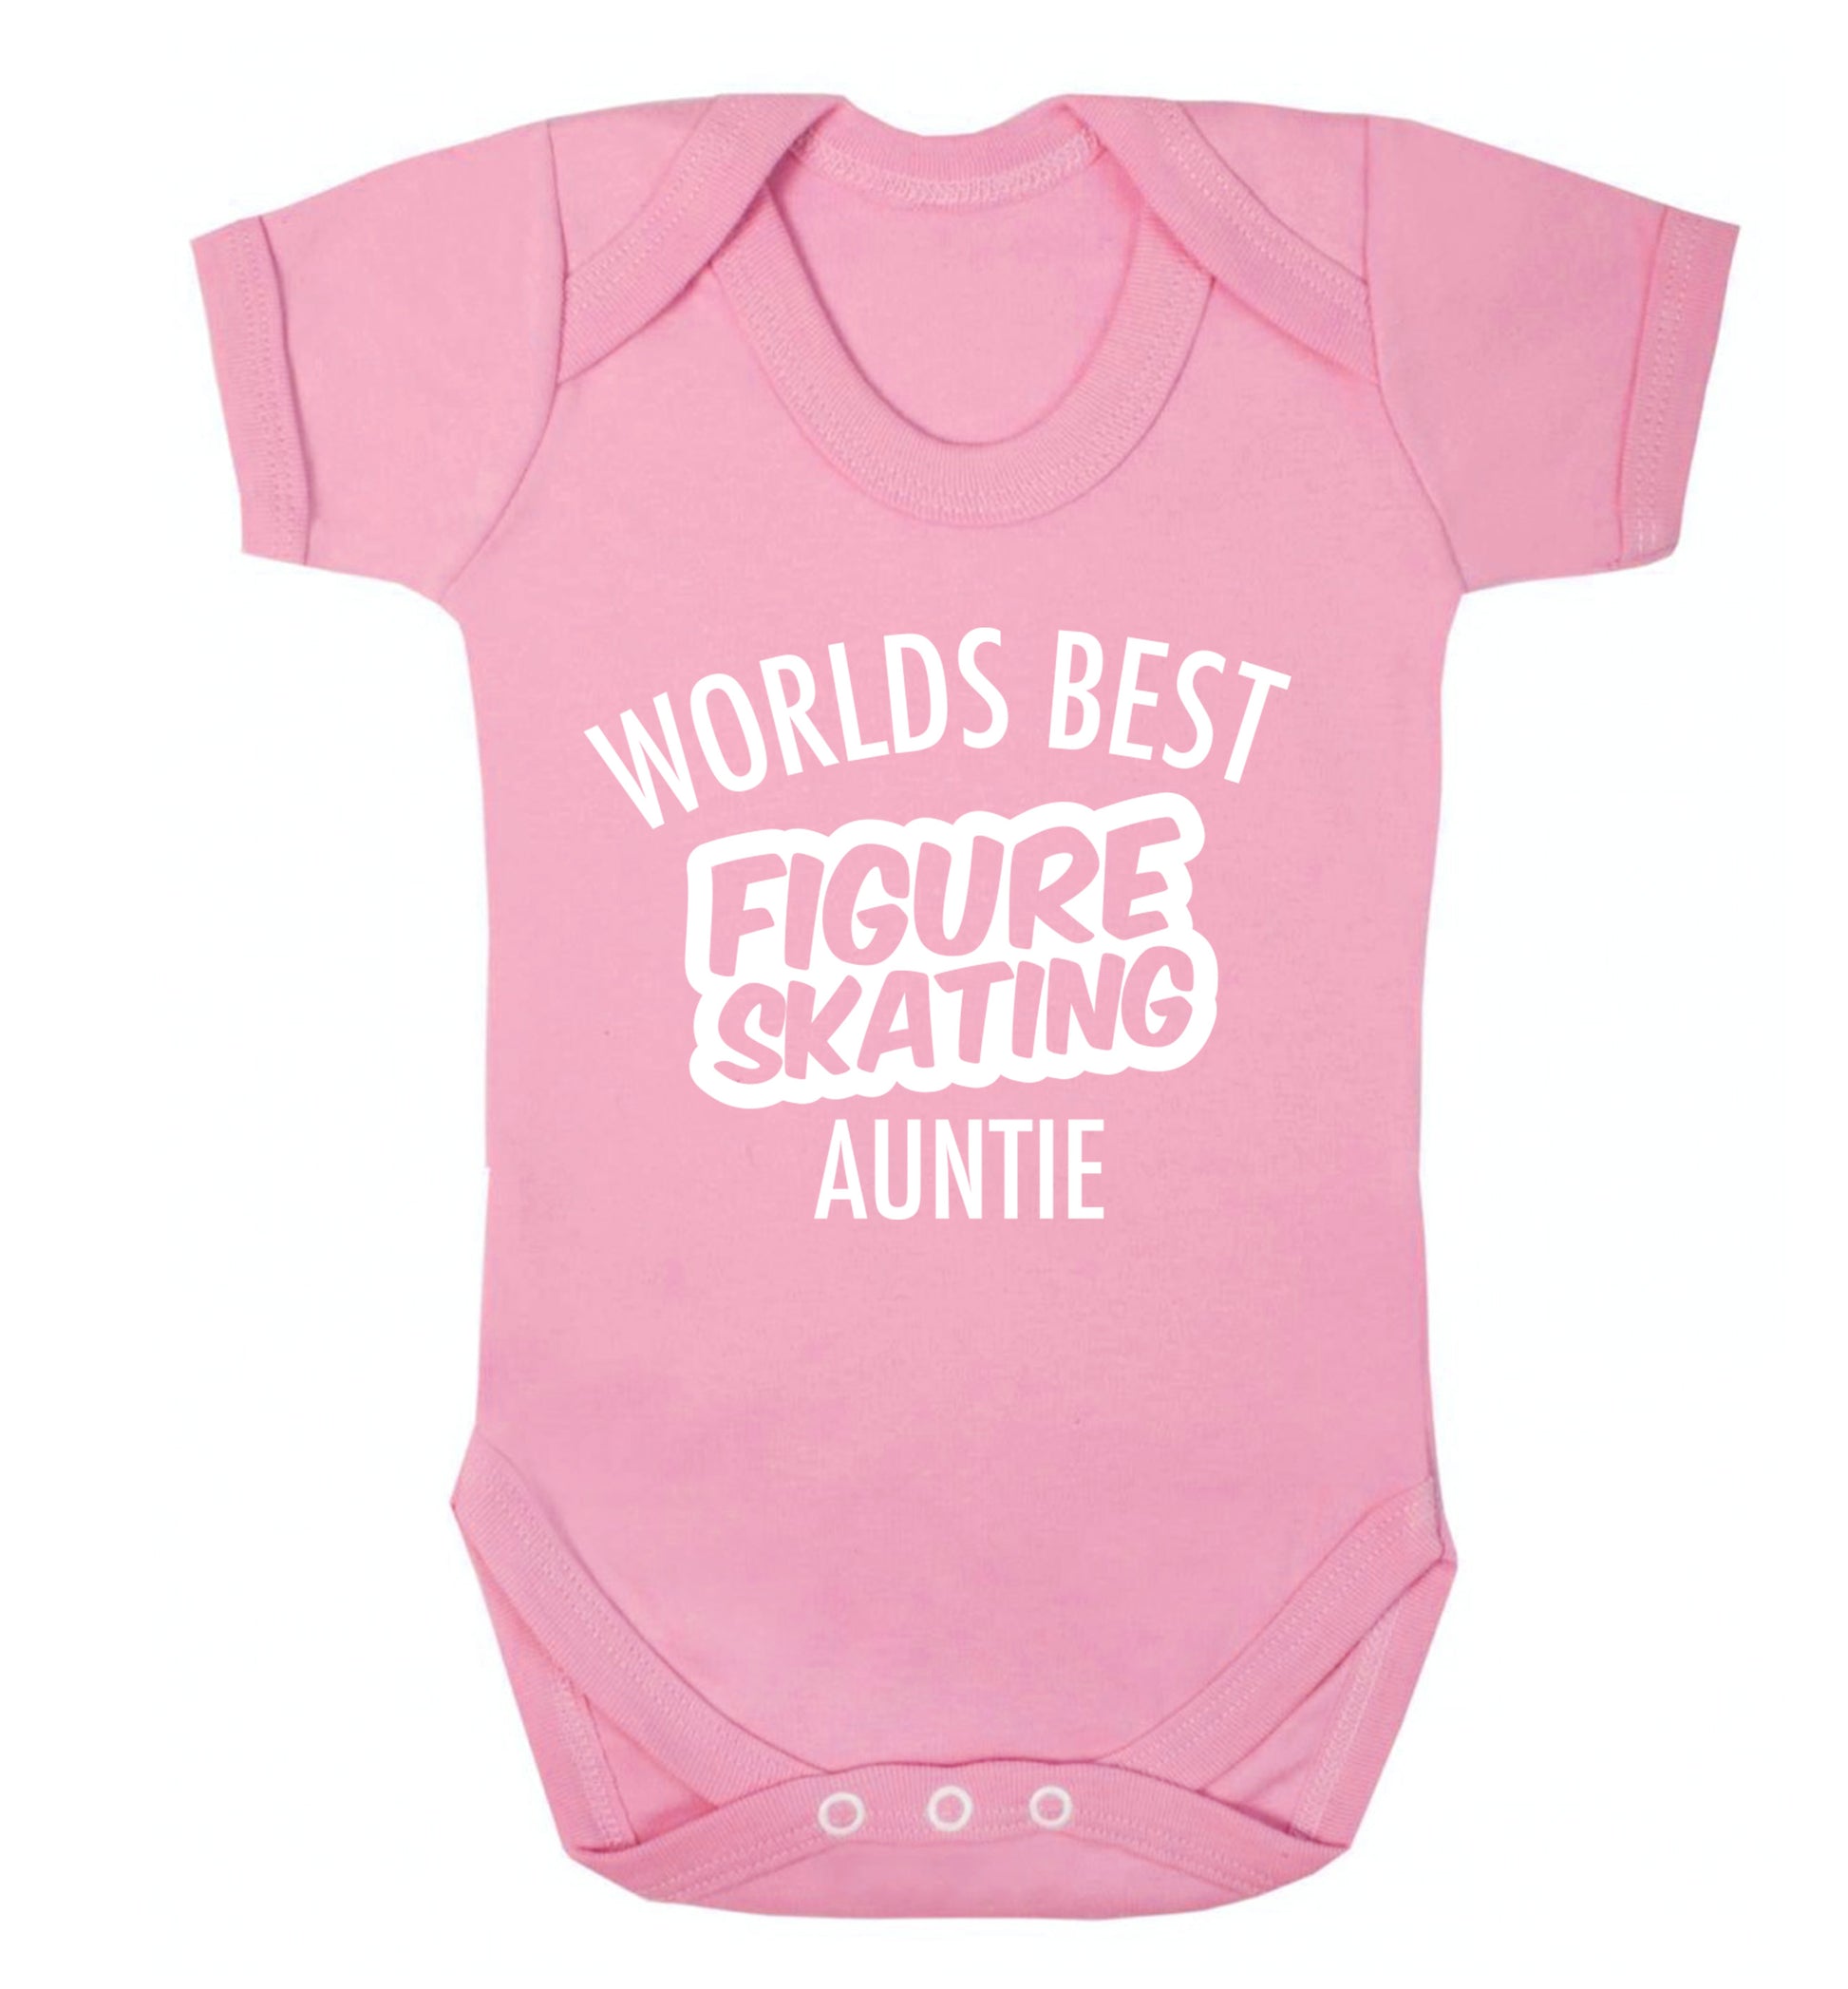 Worlds best figure skating auntie Baby Vest pale pink 18-24 months